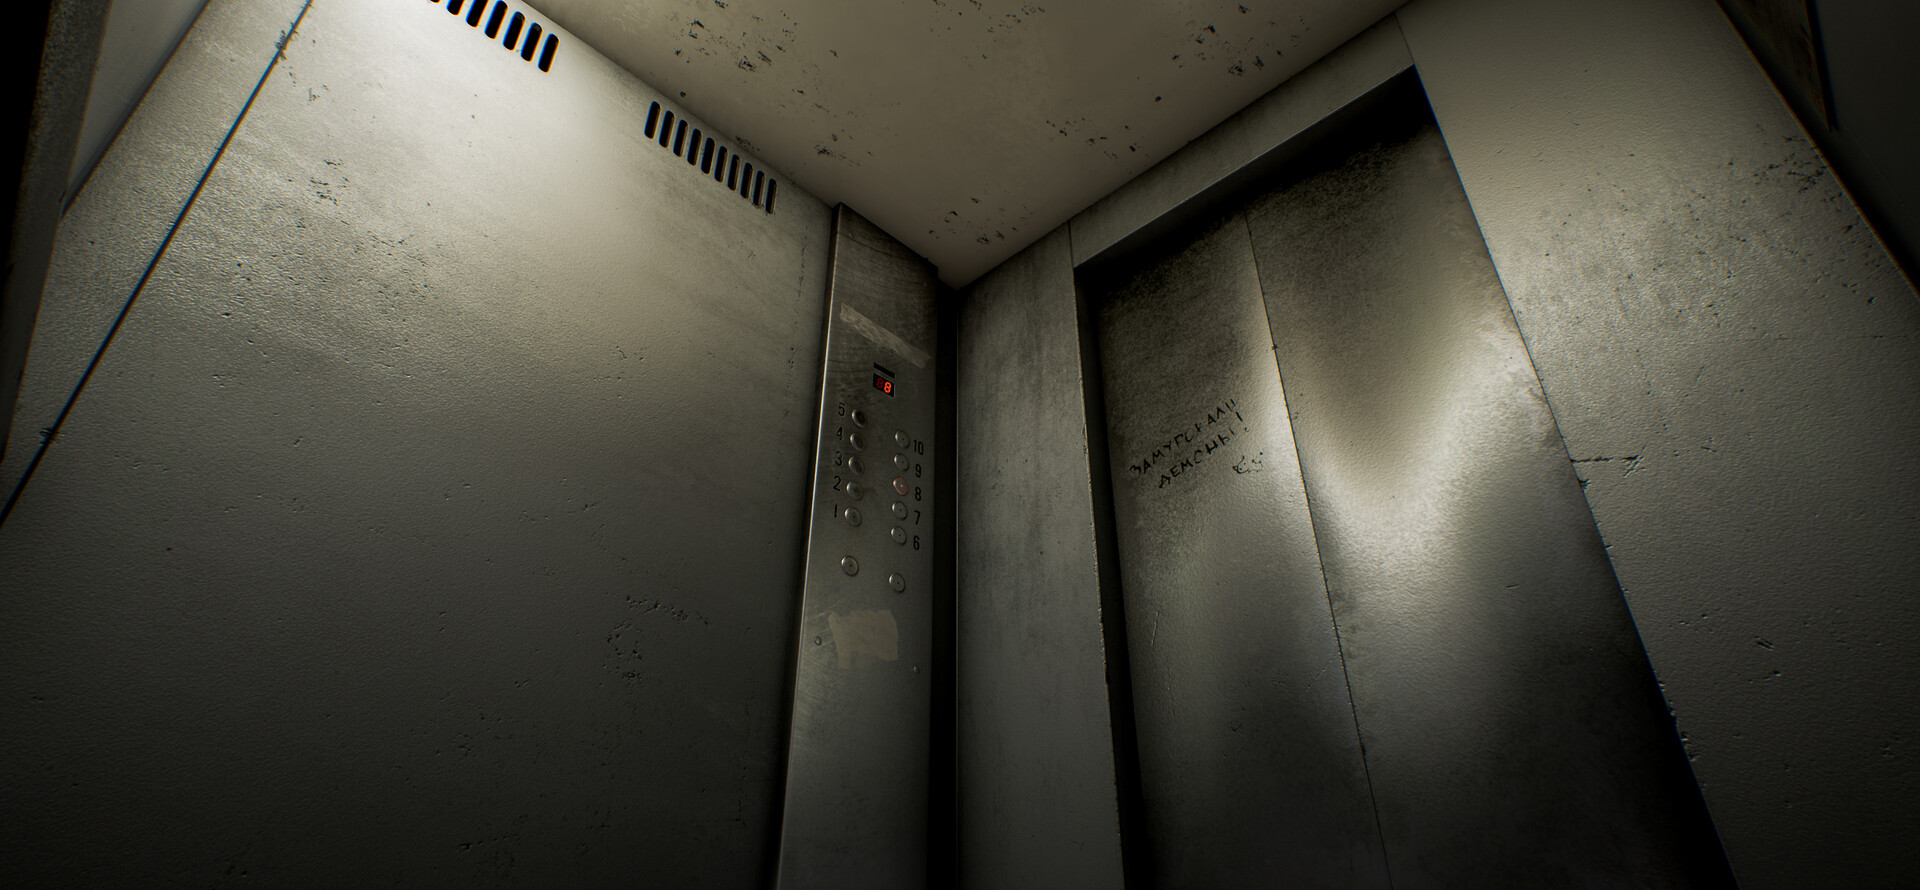 DOORS: eyes over elevator??? : r/GameTheorists